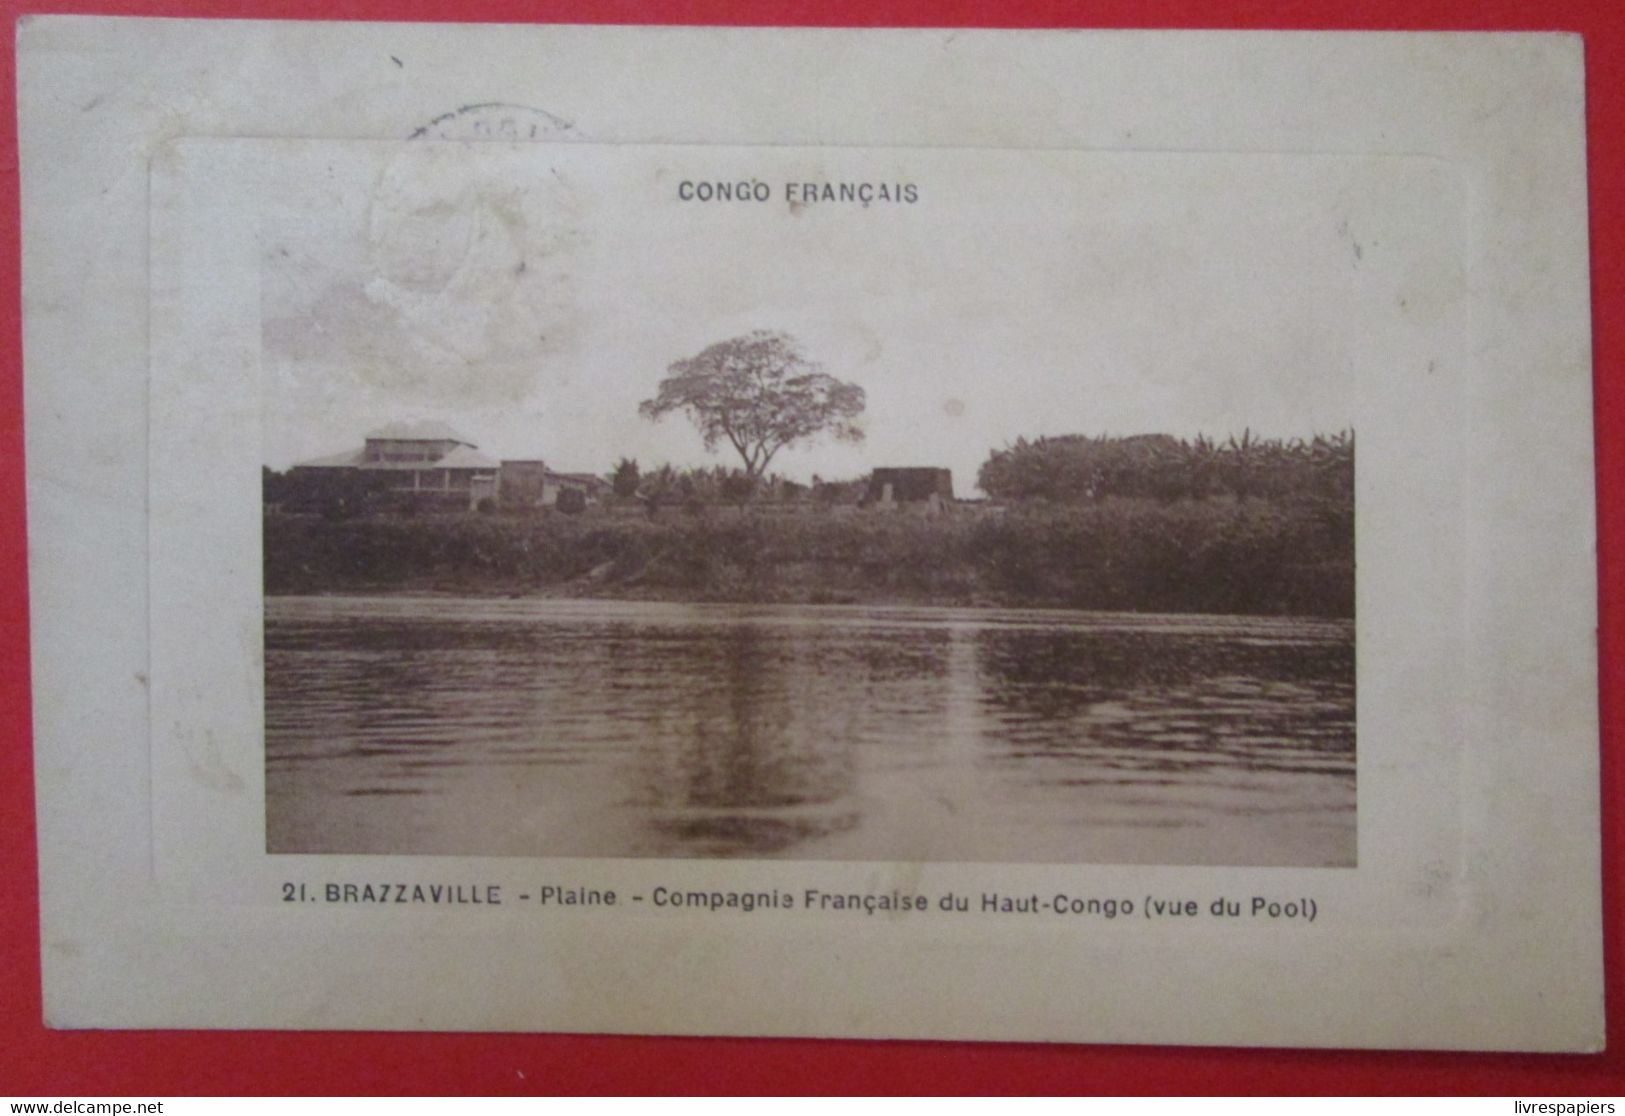 Congo Brazzaville Compagnie Française Haut Congo Cpa - Brazzaville